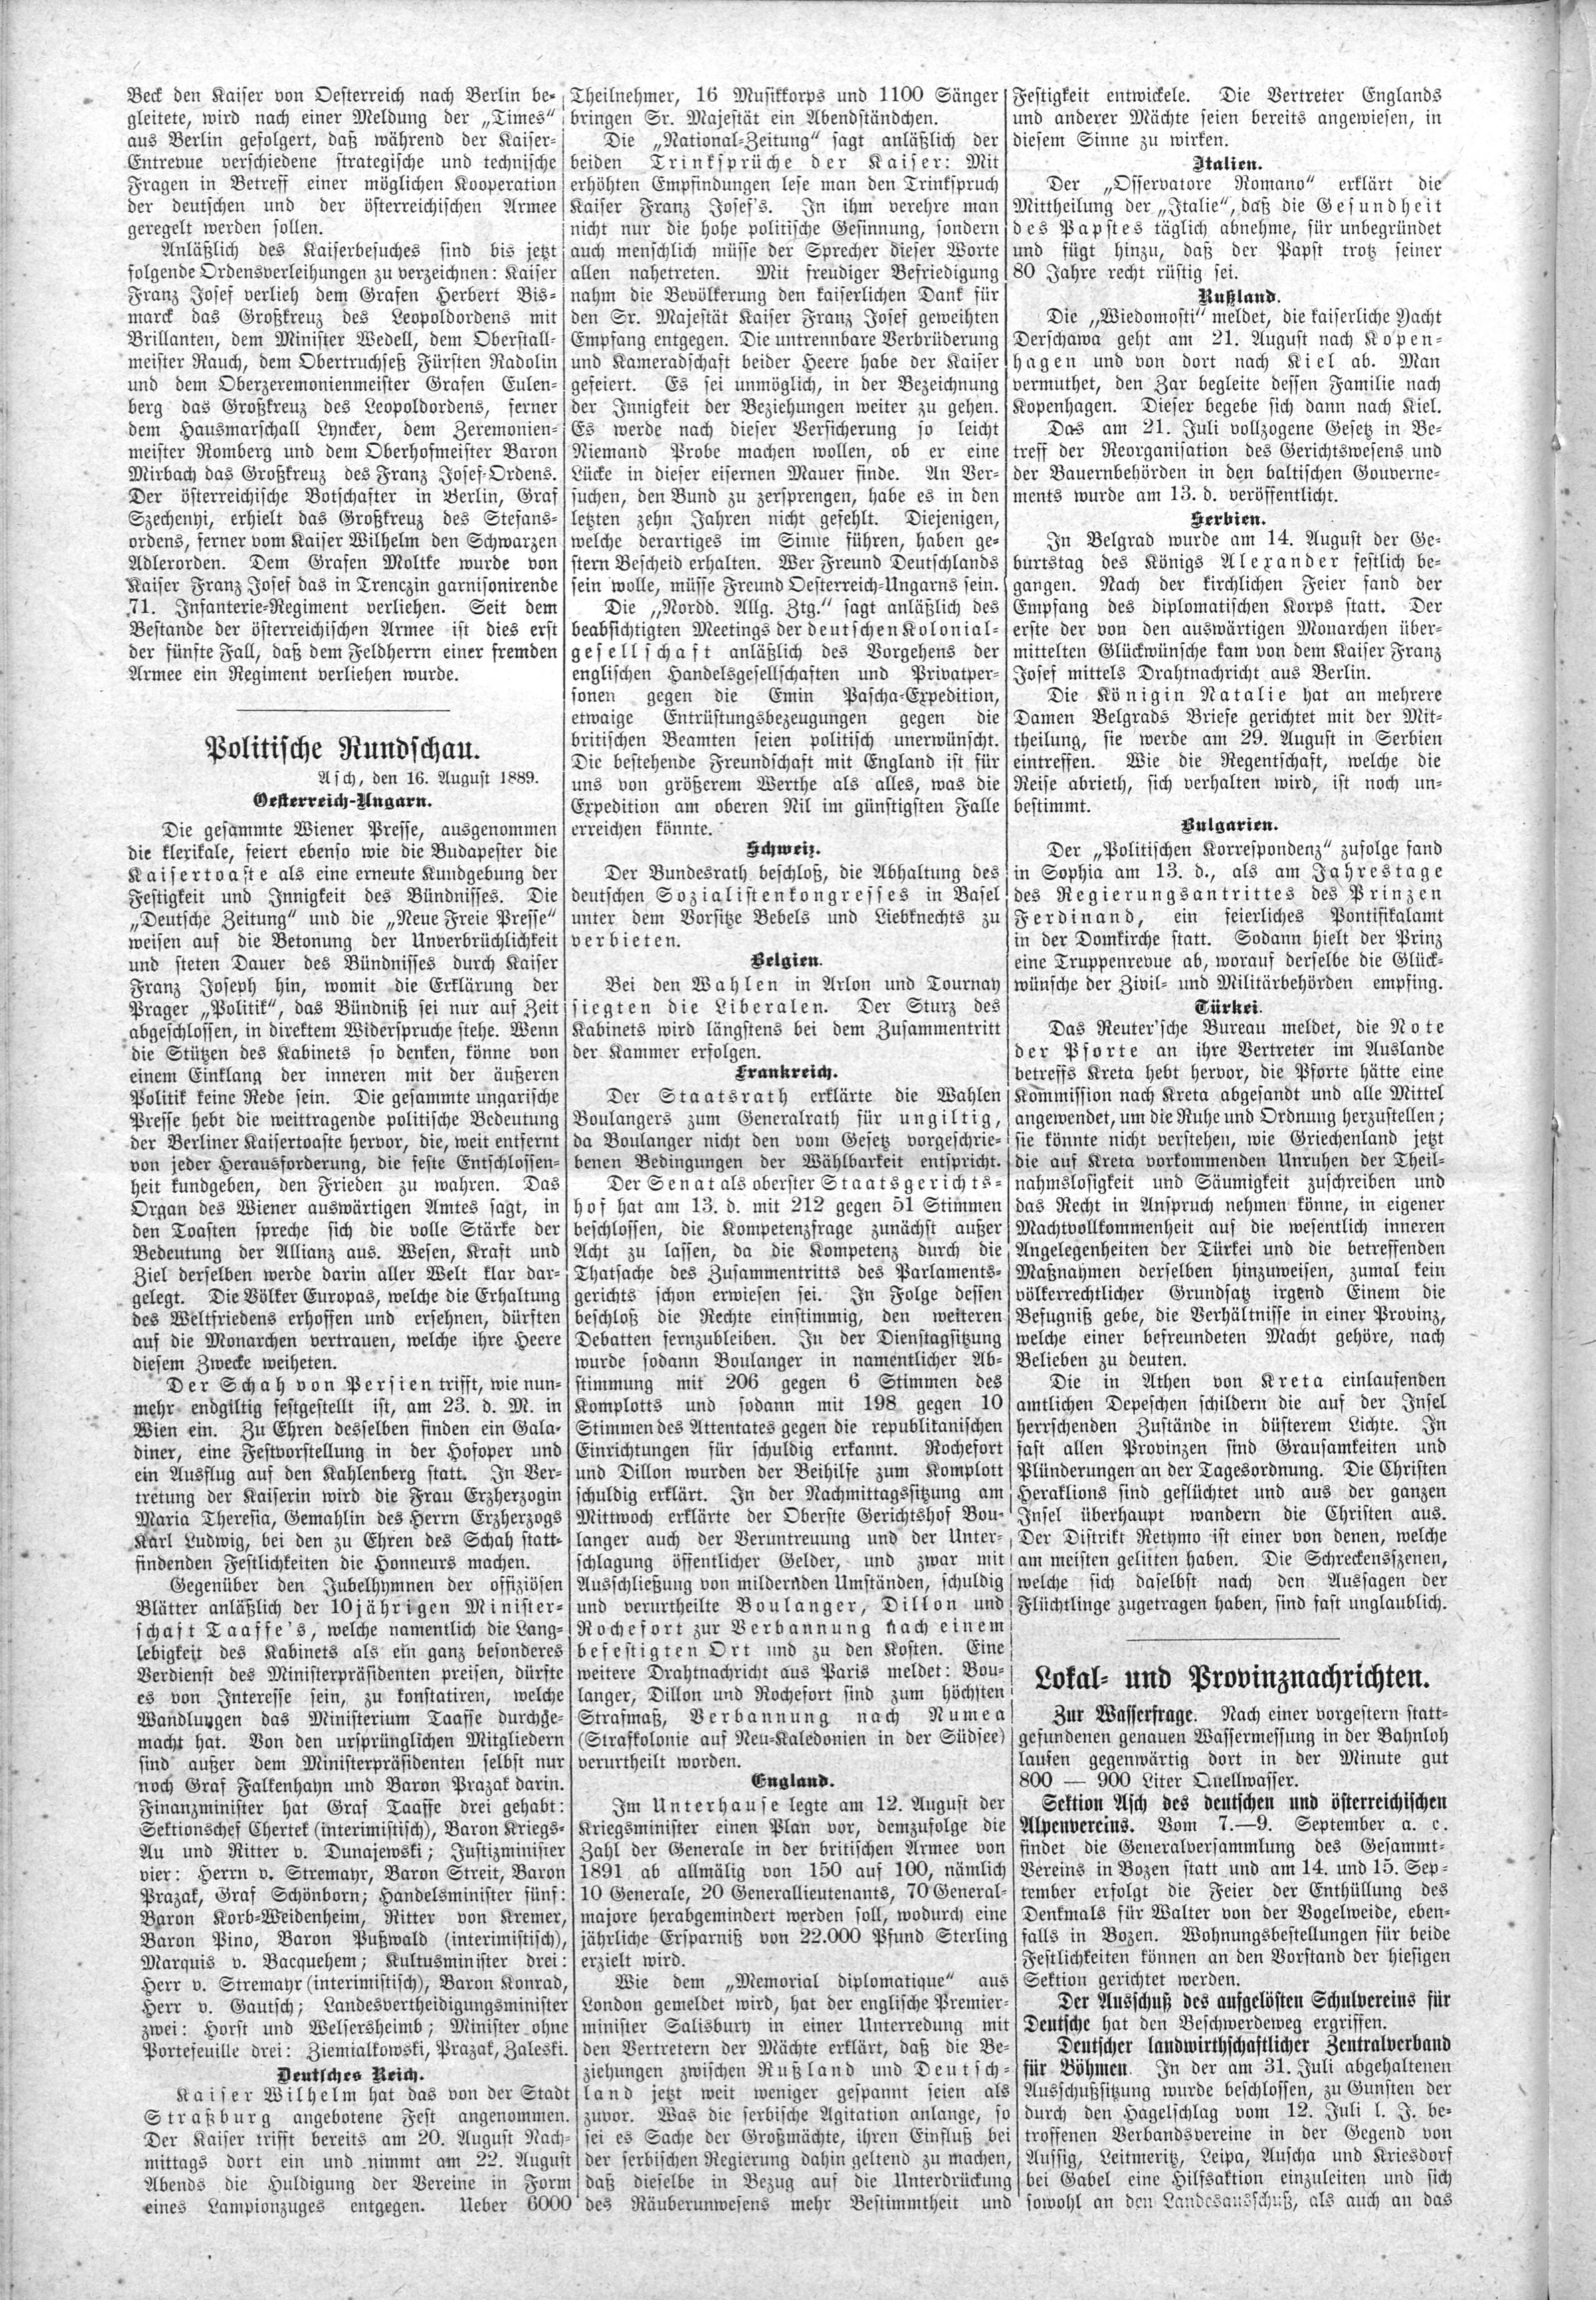 2. soap-ch_knihovna_ascher-zeitung-1889-08-17-n66_2610